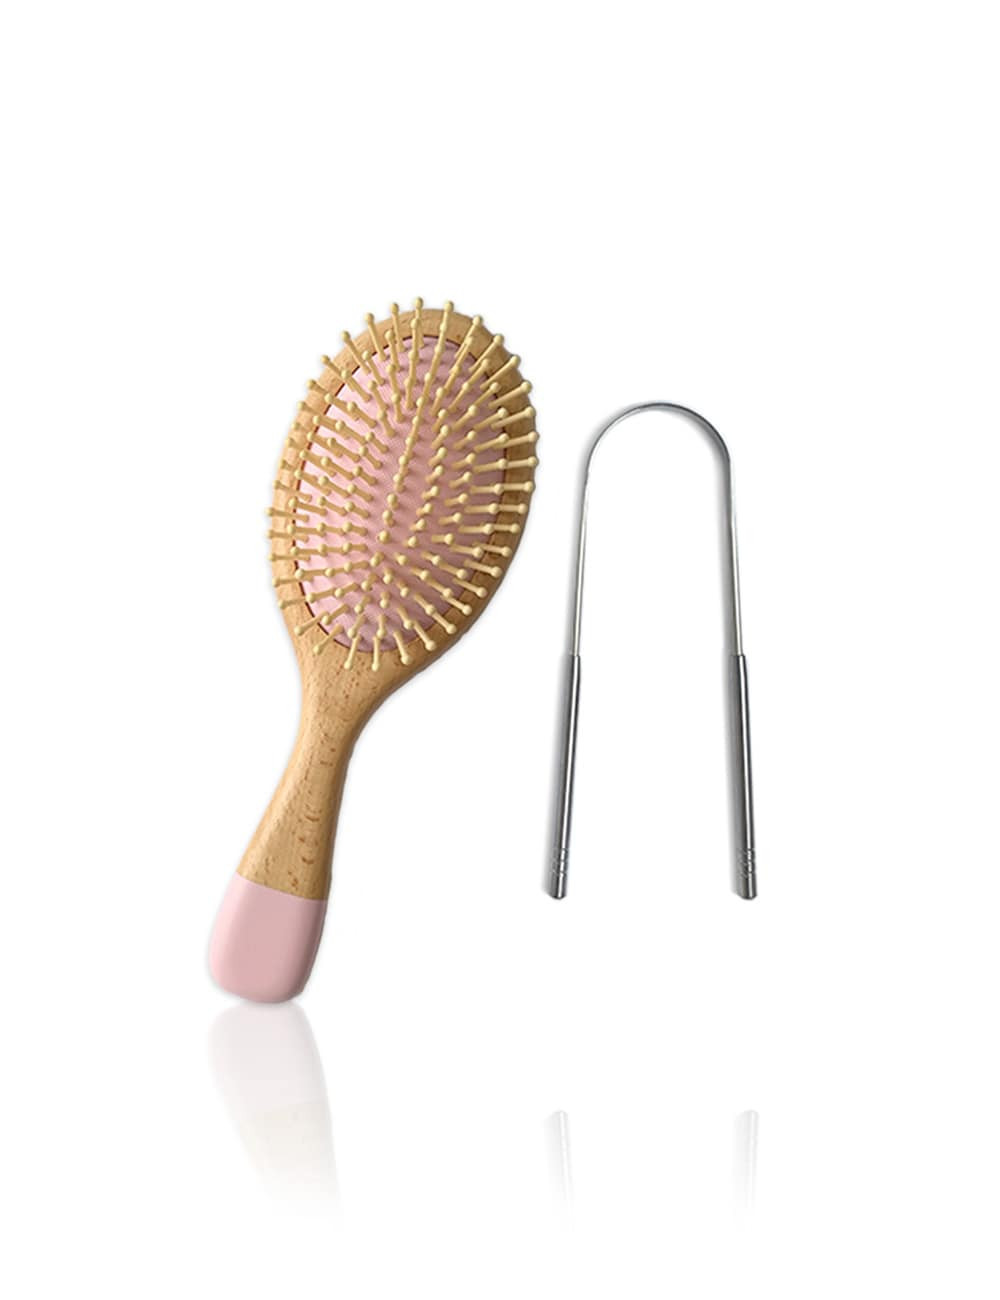 Cepillo de bambu ecologico para cabello con limpiador de lengua de acero inxodibable